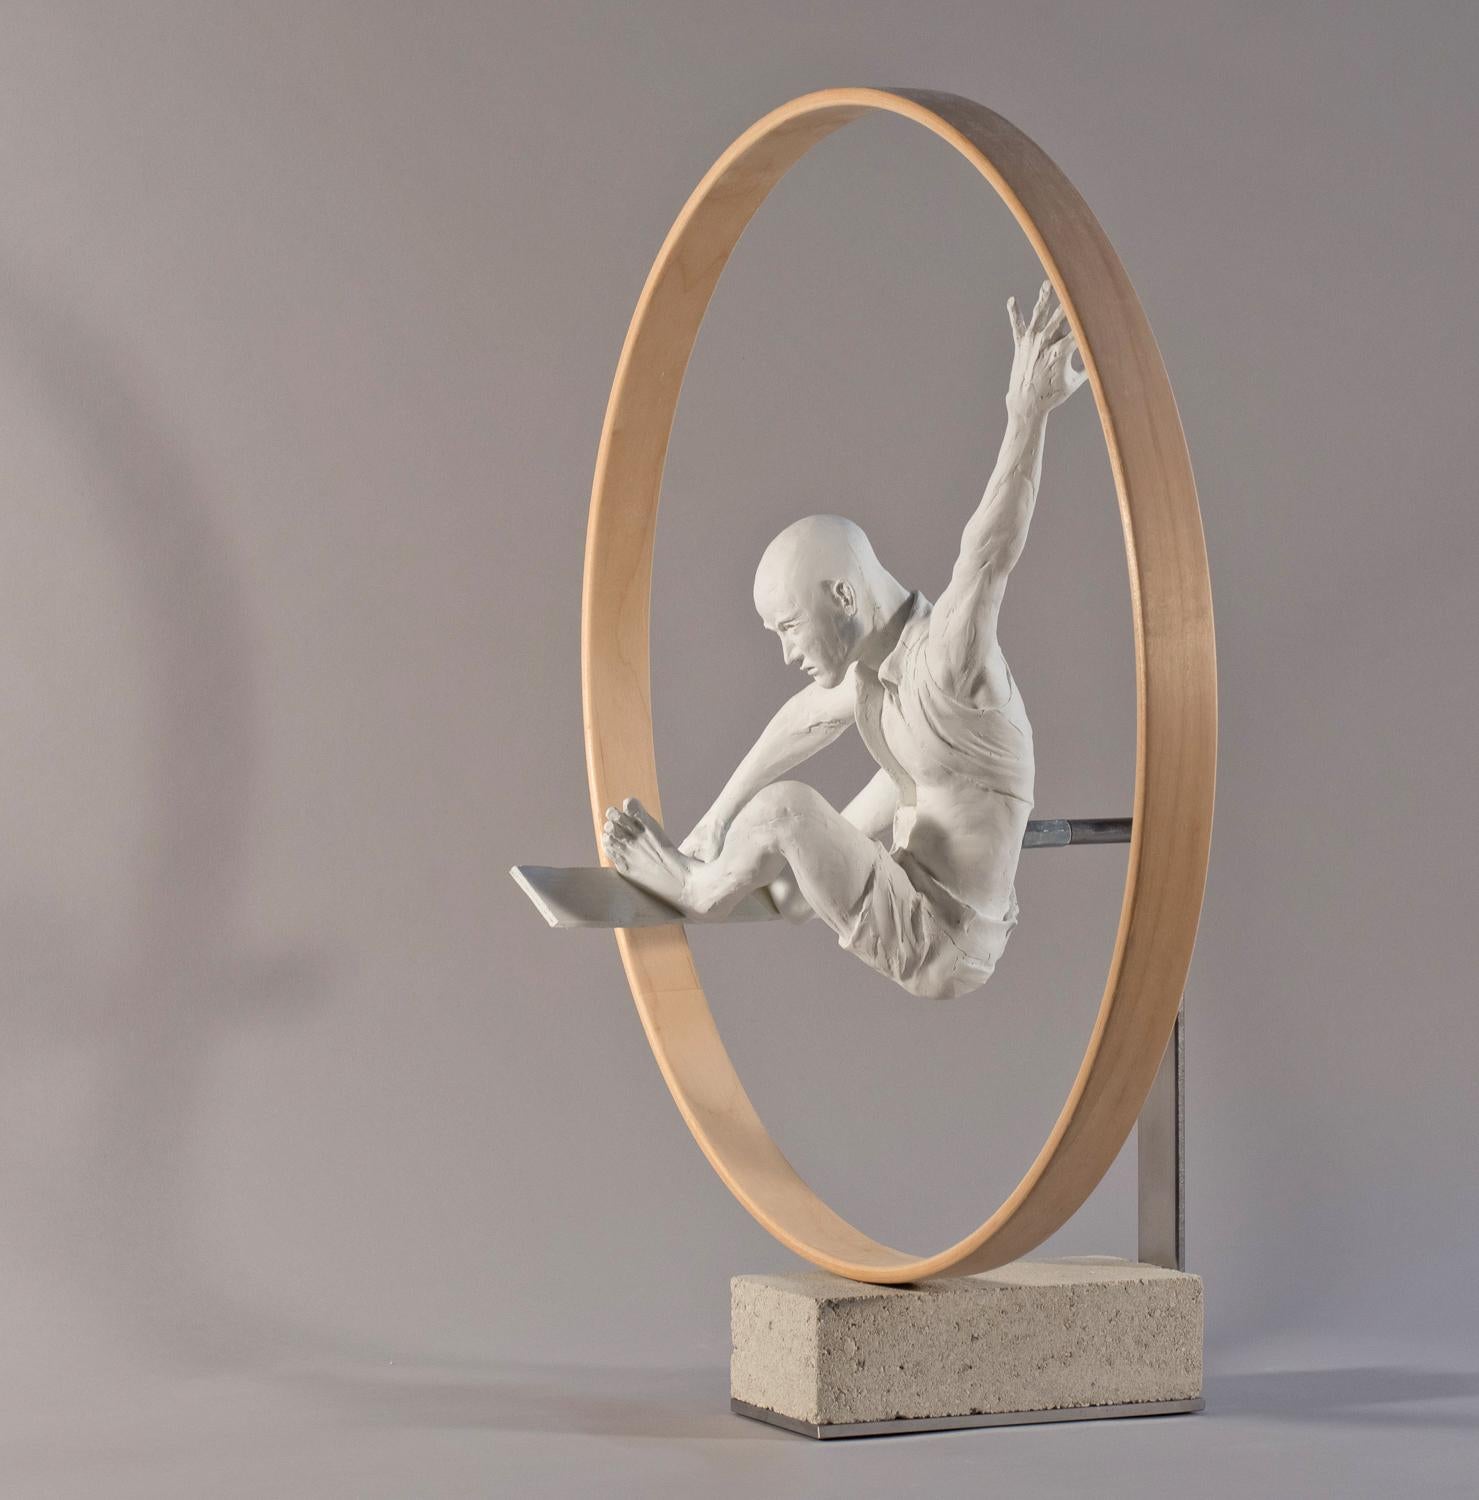 Indy Grab – athletische männliche figurative Skulptur, die einen Skateboardtrick darstellt